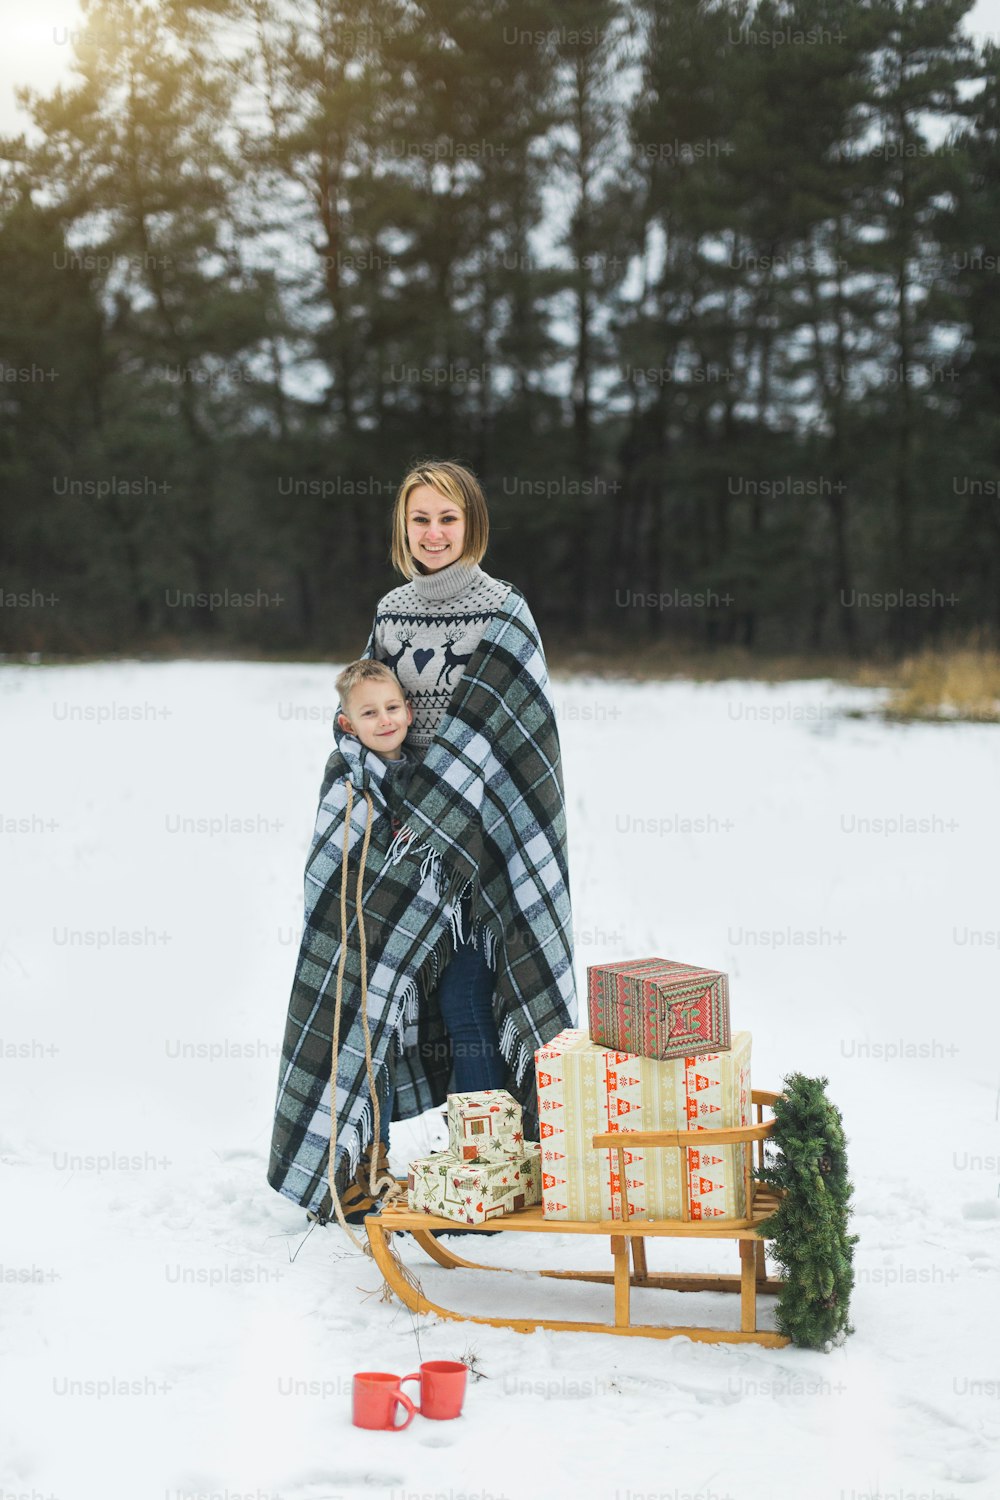 그녀의 아들과 함께 체크 무늬 격자 무늬로 덮인 예쁜 젊은 어머니는 겨울 숲의 배경 위에 서서 크리스마스 화환과 선물 선물로 장식 된 나무 썰매를 당깁니다.